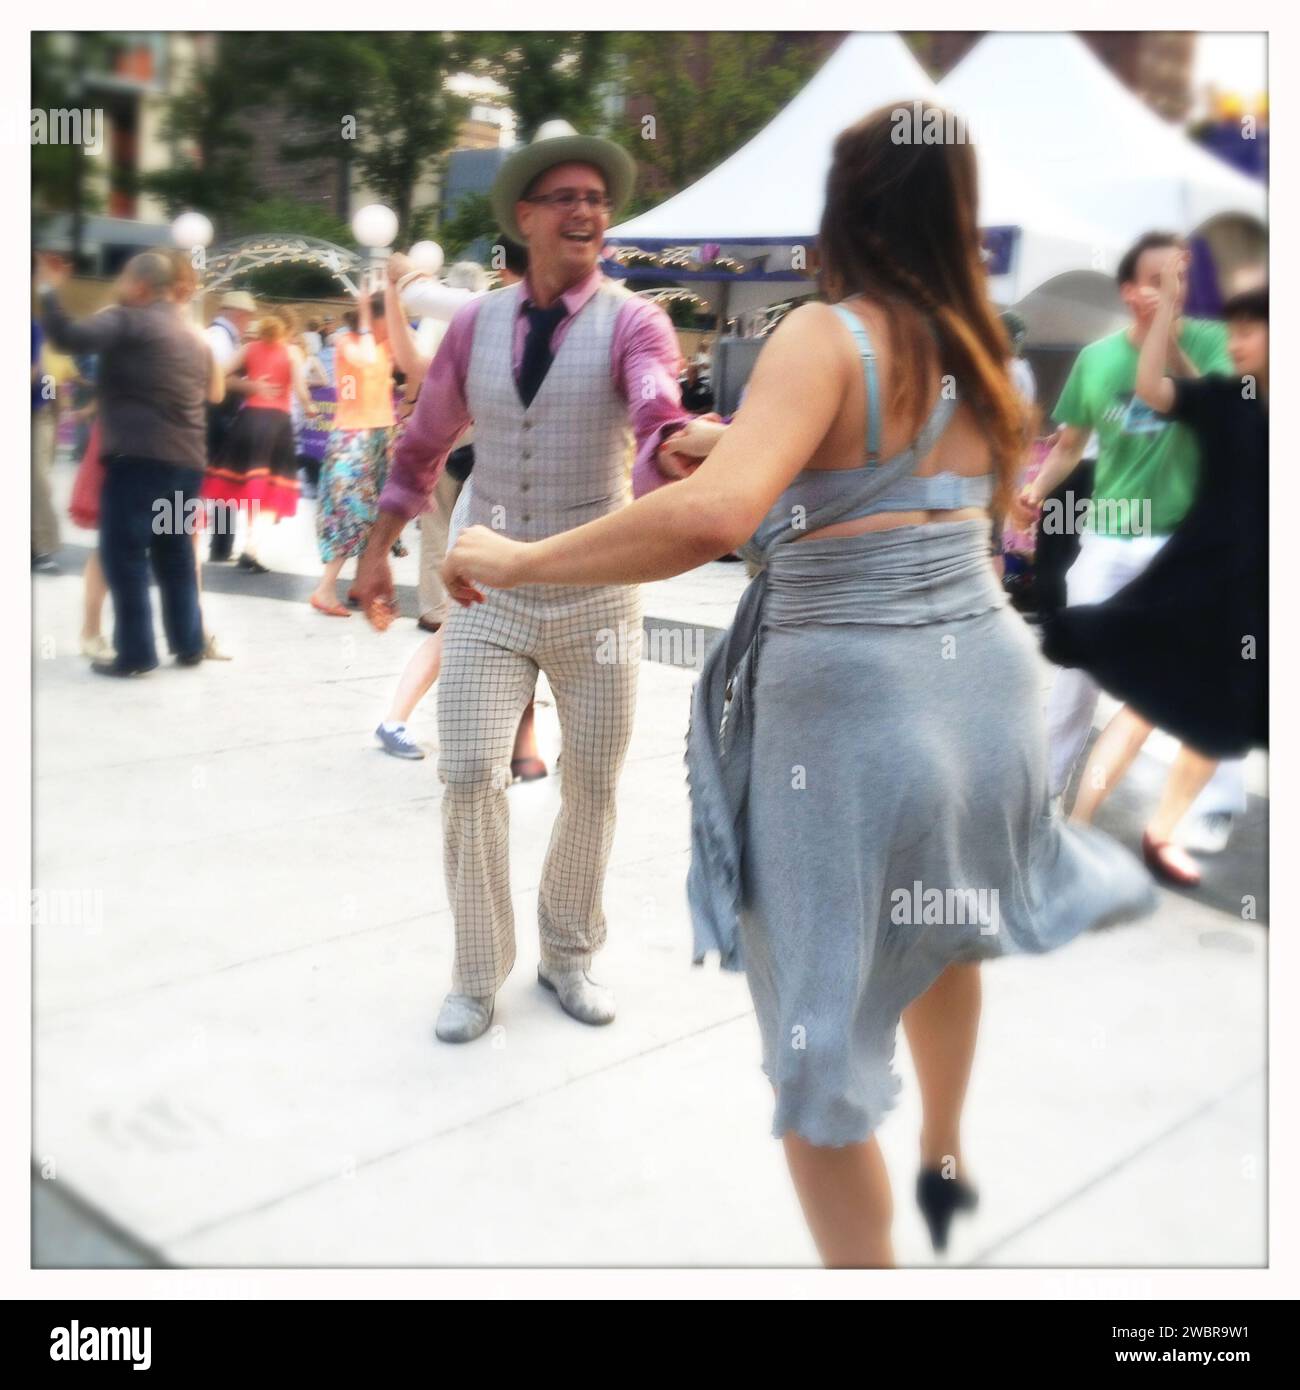 Homme en costume à carreaux lumineux dansant le boogie Woogie avec femme en bleu Banque D'Images